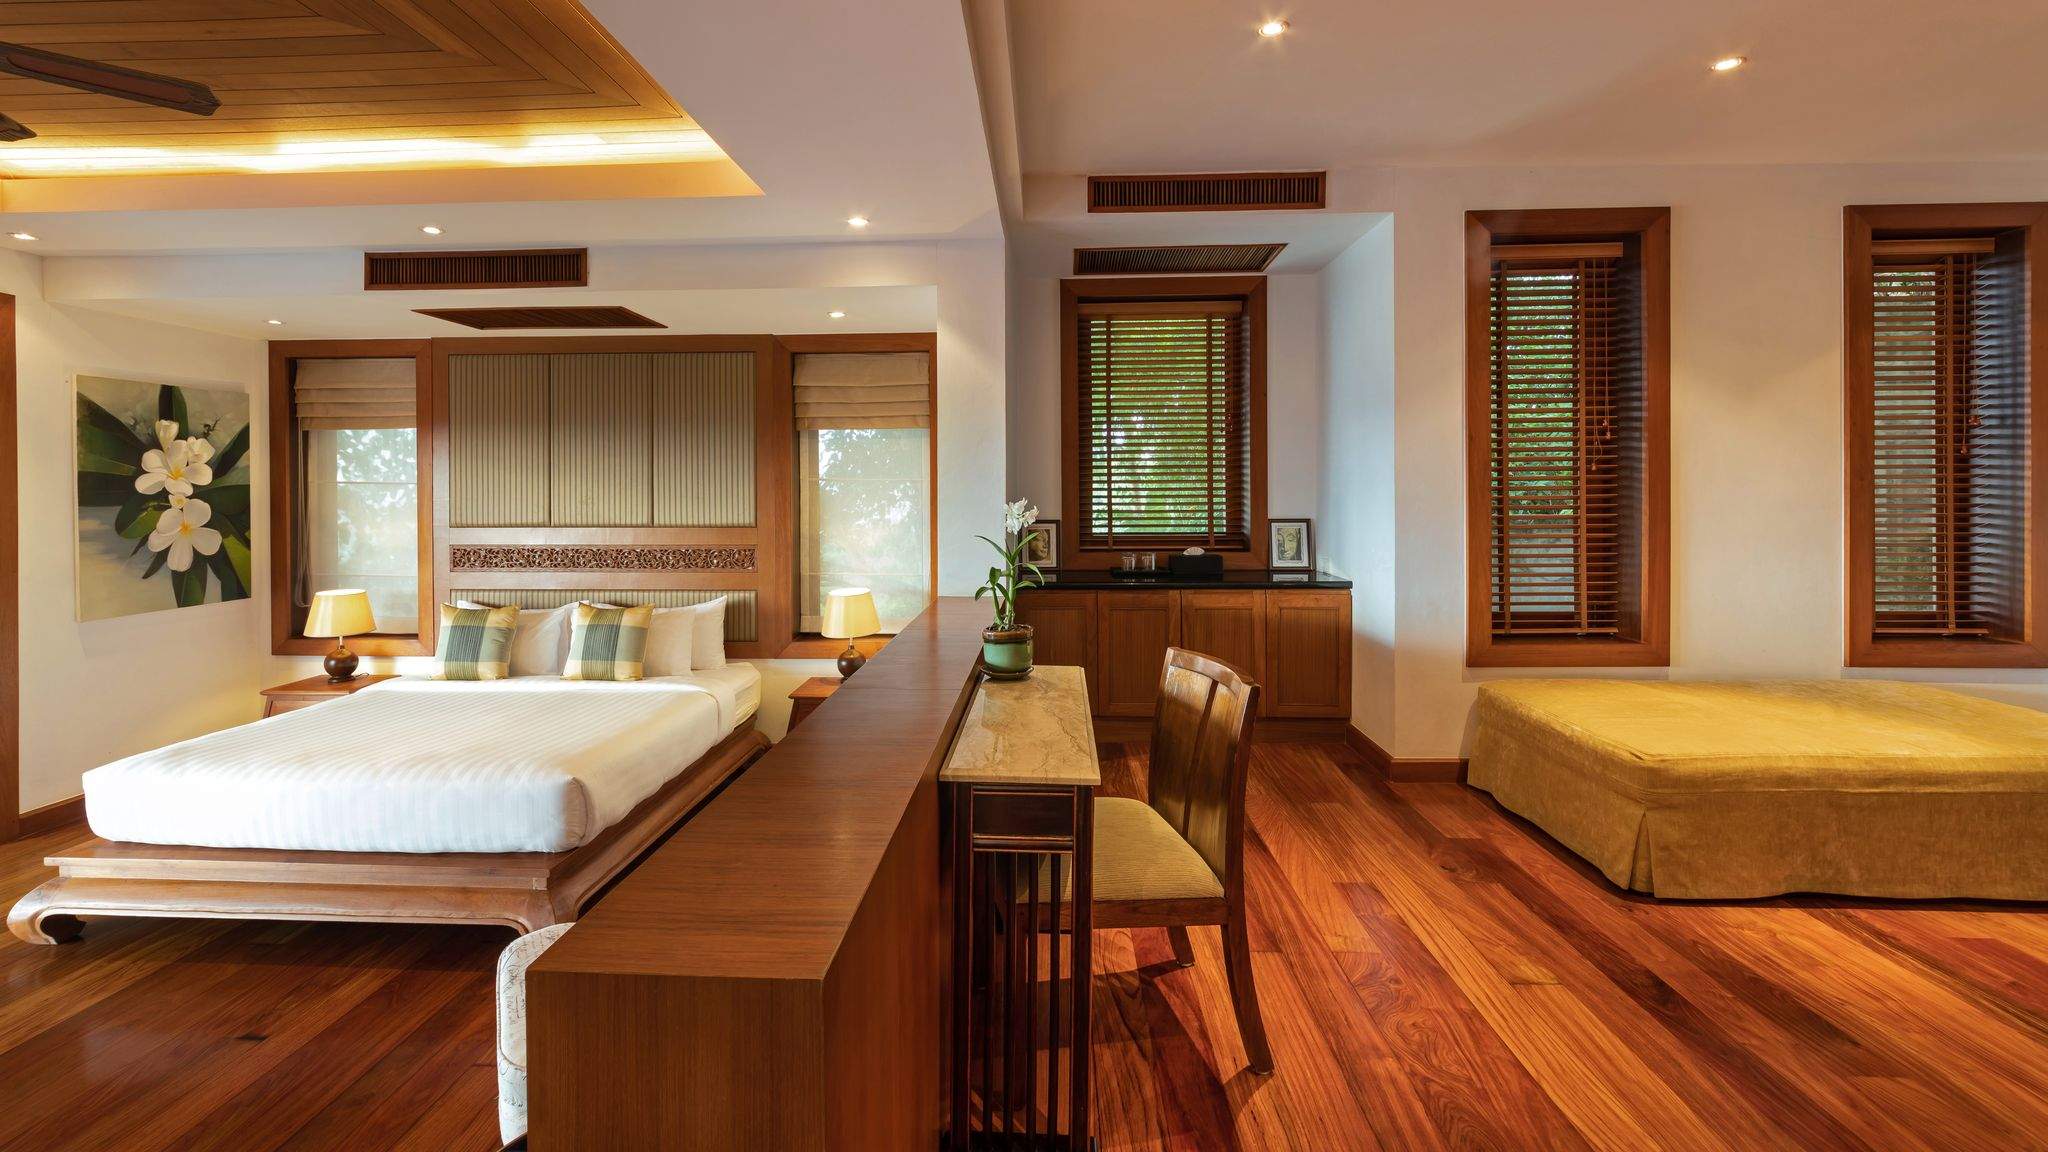 Rent villa Yang Som, Thailand, Phuket, Surin | Villacarte